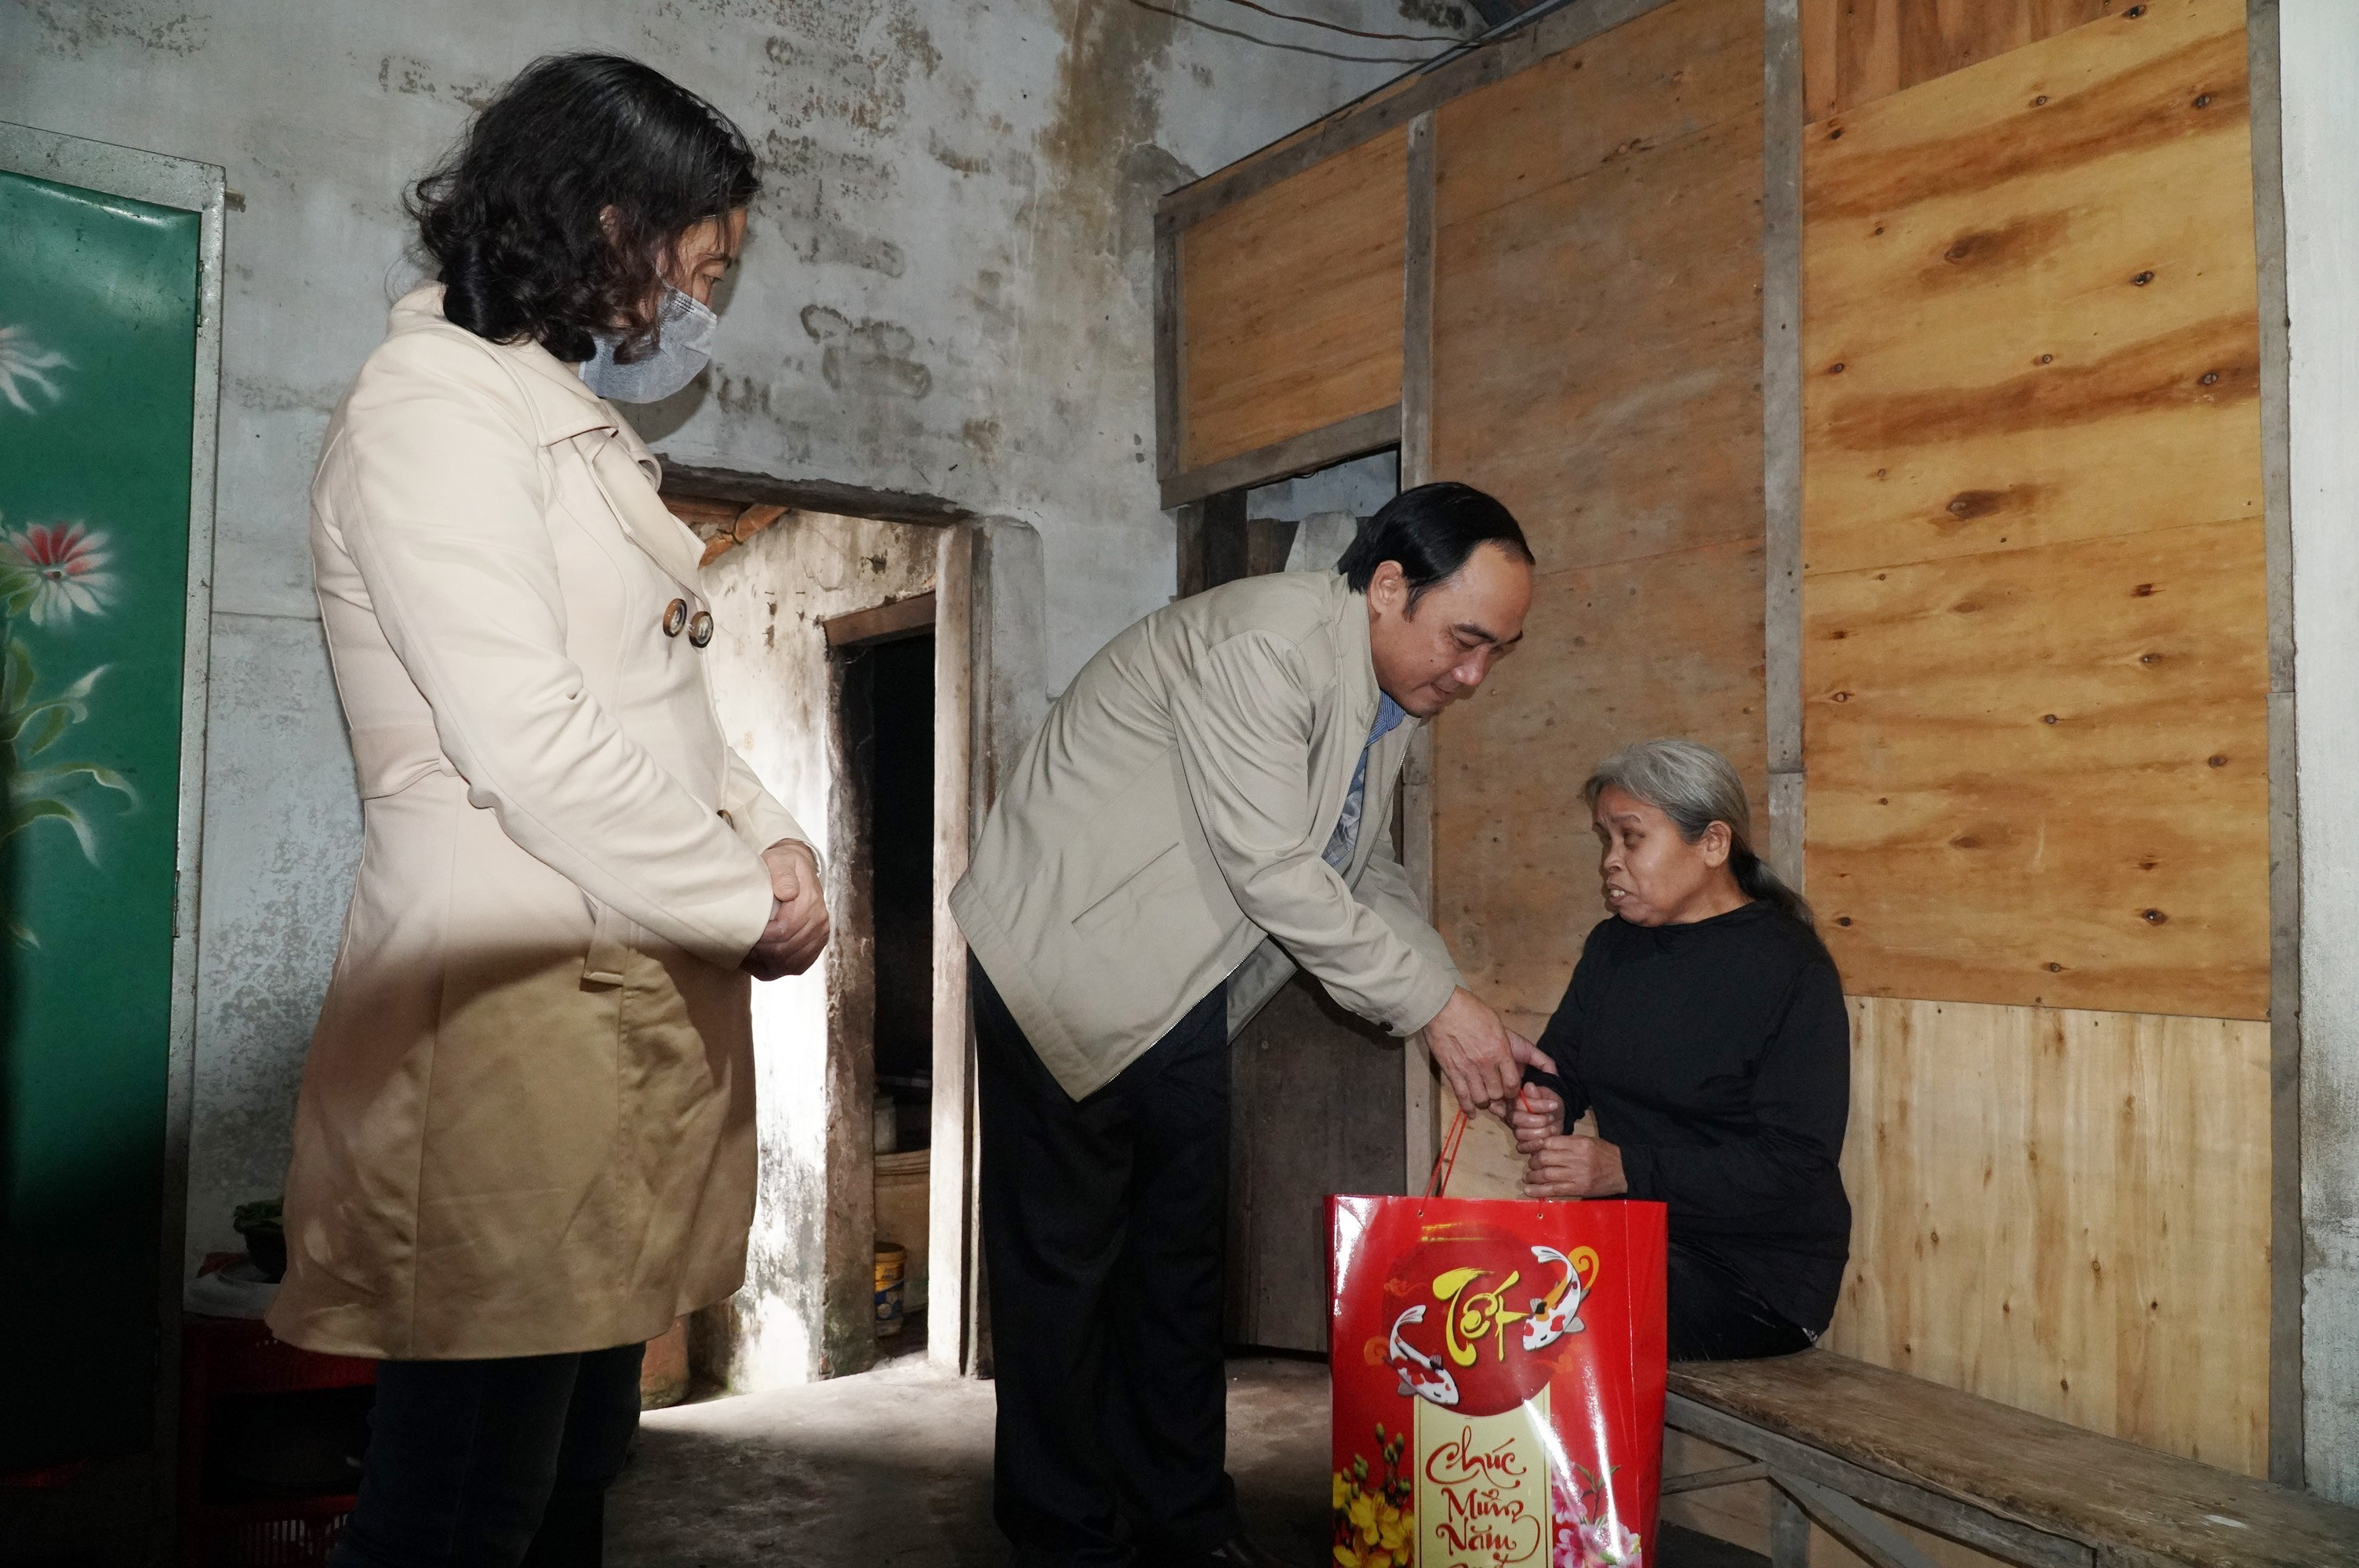 Đồng chí Trần Quốc Khánh, Phó Trưởng Ban Tuyên giáo Tỉnh ủy thăm và trao qua cho hộ nghèo xóm Quy Chính, thị trấn Nam Đàn.